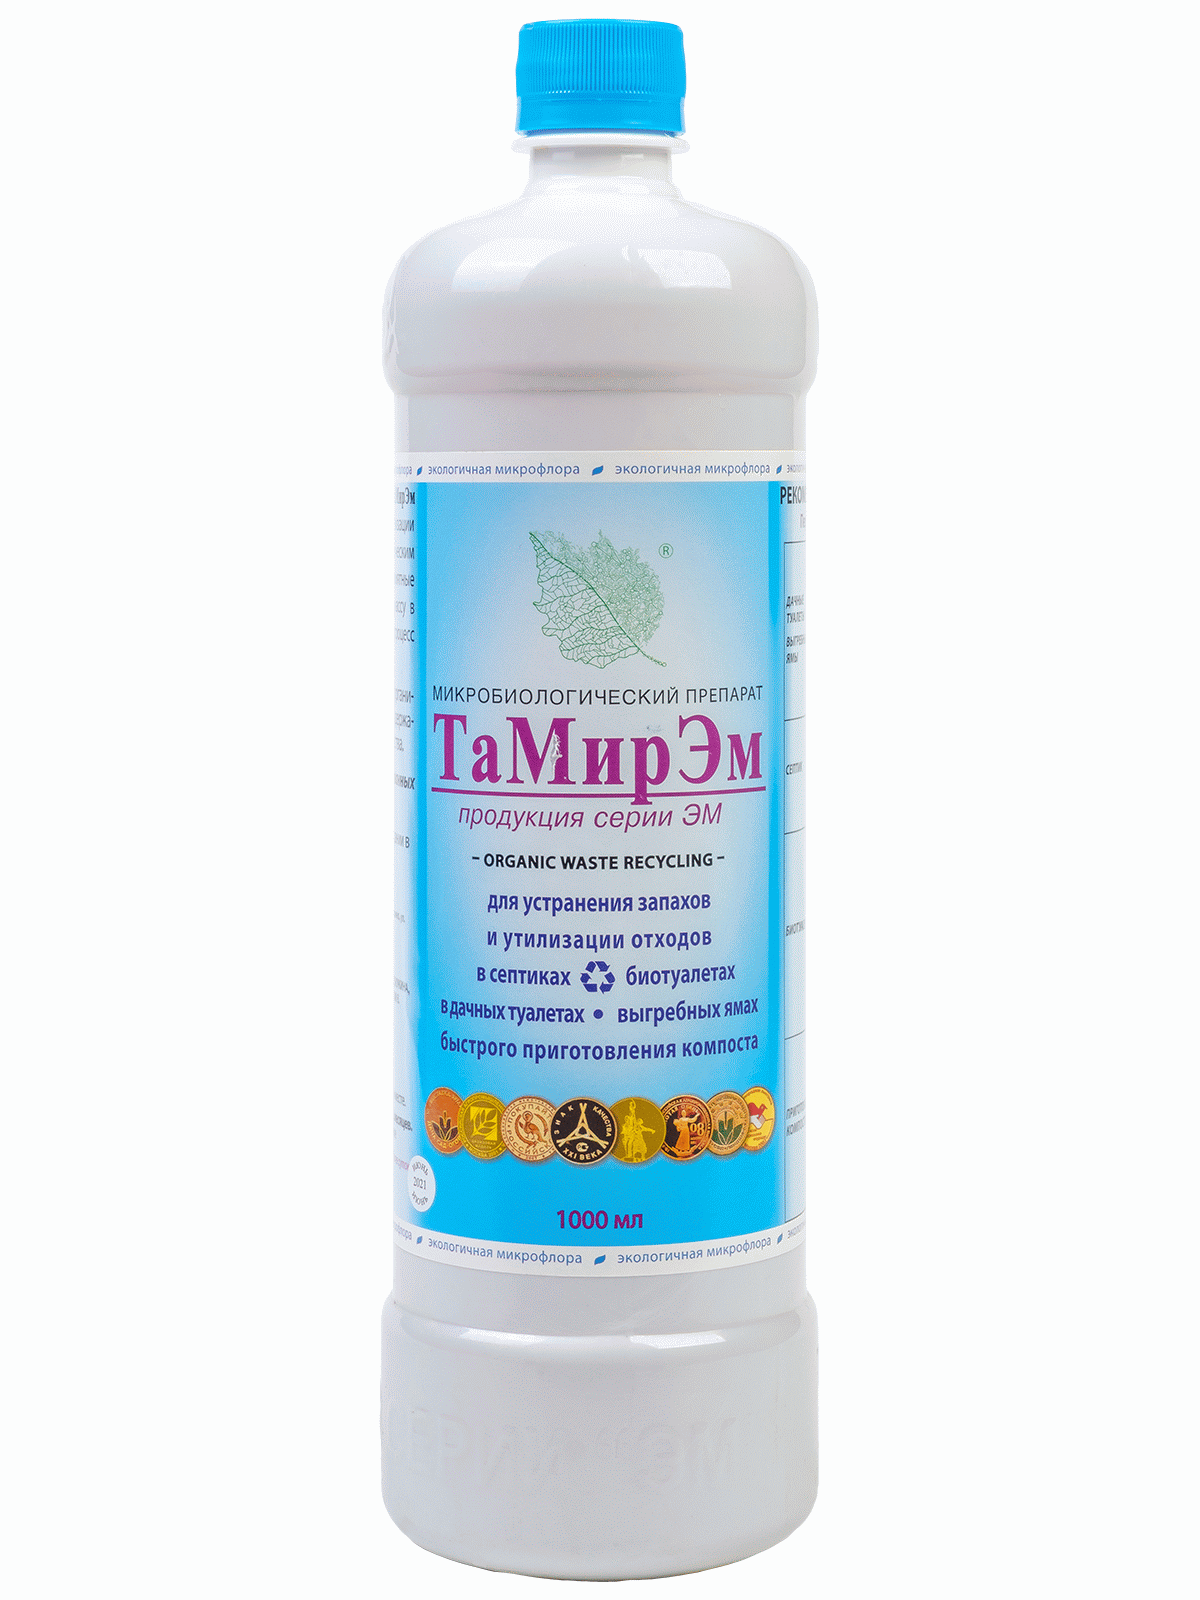 Тамир ЭМ - отечественный микробиологический продукт